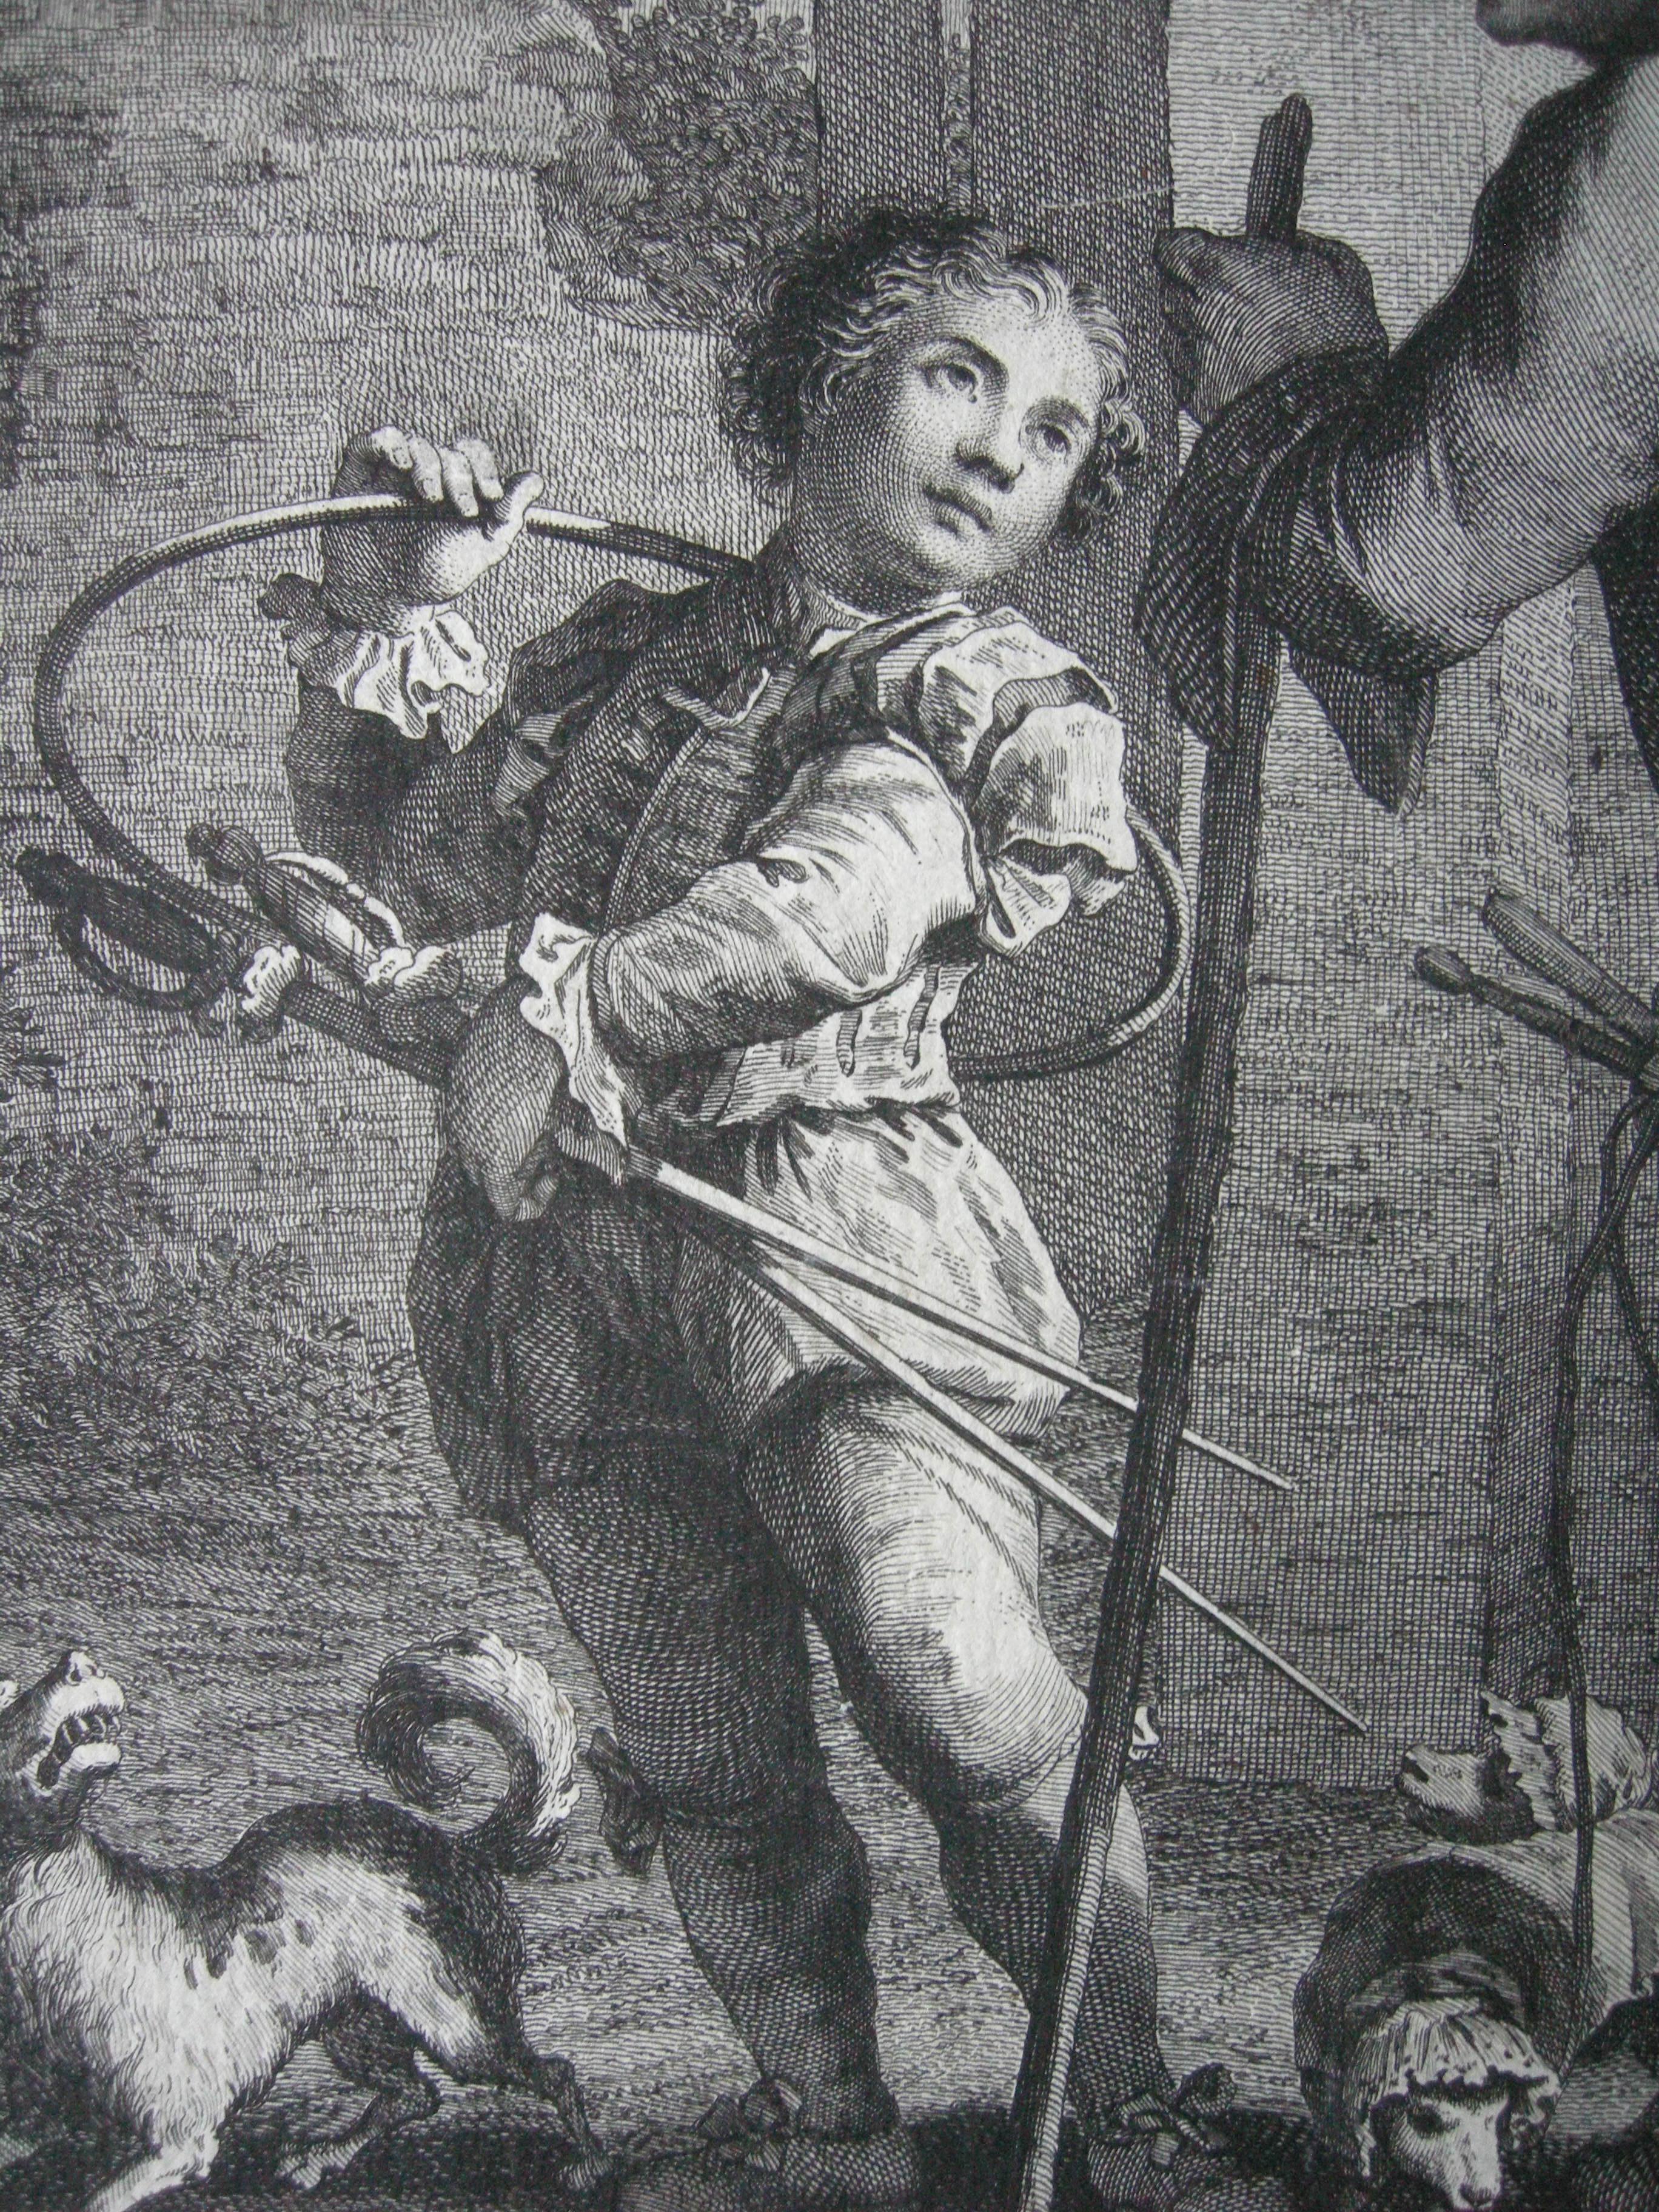 Dieser reizvolle Original-Kupferstich von Giovanni Volpato ( 1733-1803 ) nach einem Gemälde von Francesco Maggiotto ( 1738-1805 ) wurde 1765 in Venedig ausgeführt.
Ein kleiner Junge, der zwei Dolche und einen Reifen trägt, schaut zu einem Mann mit